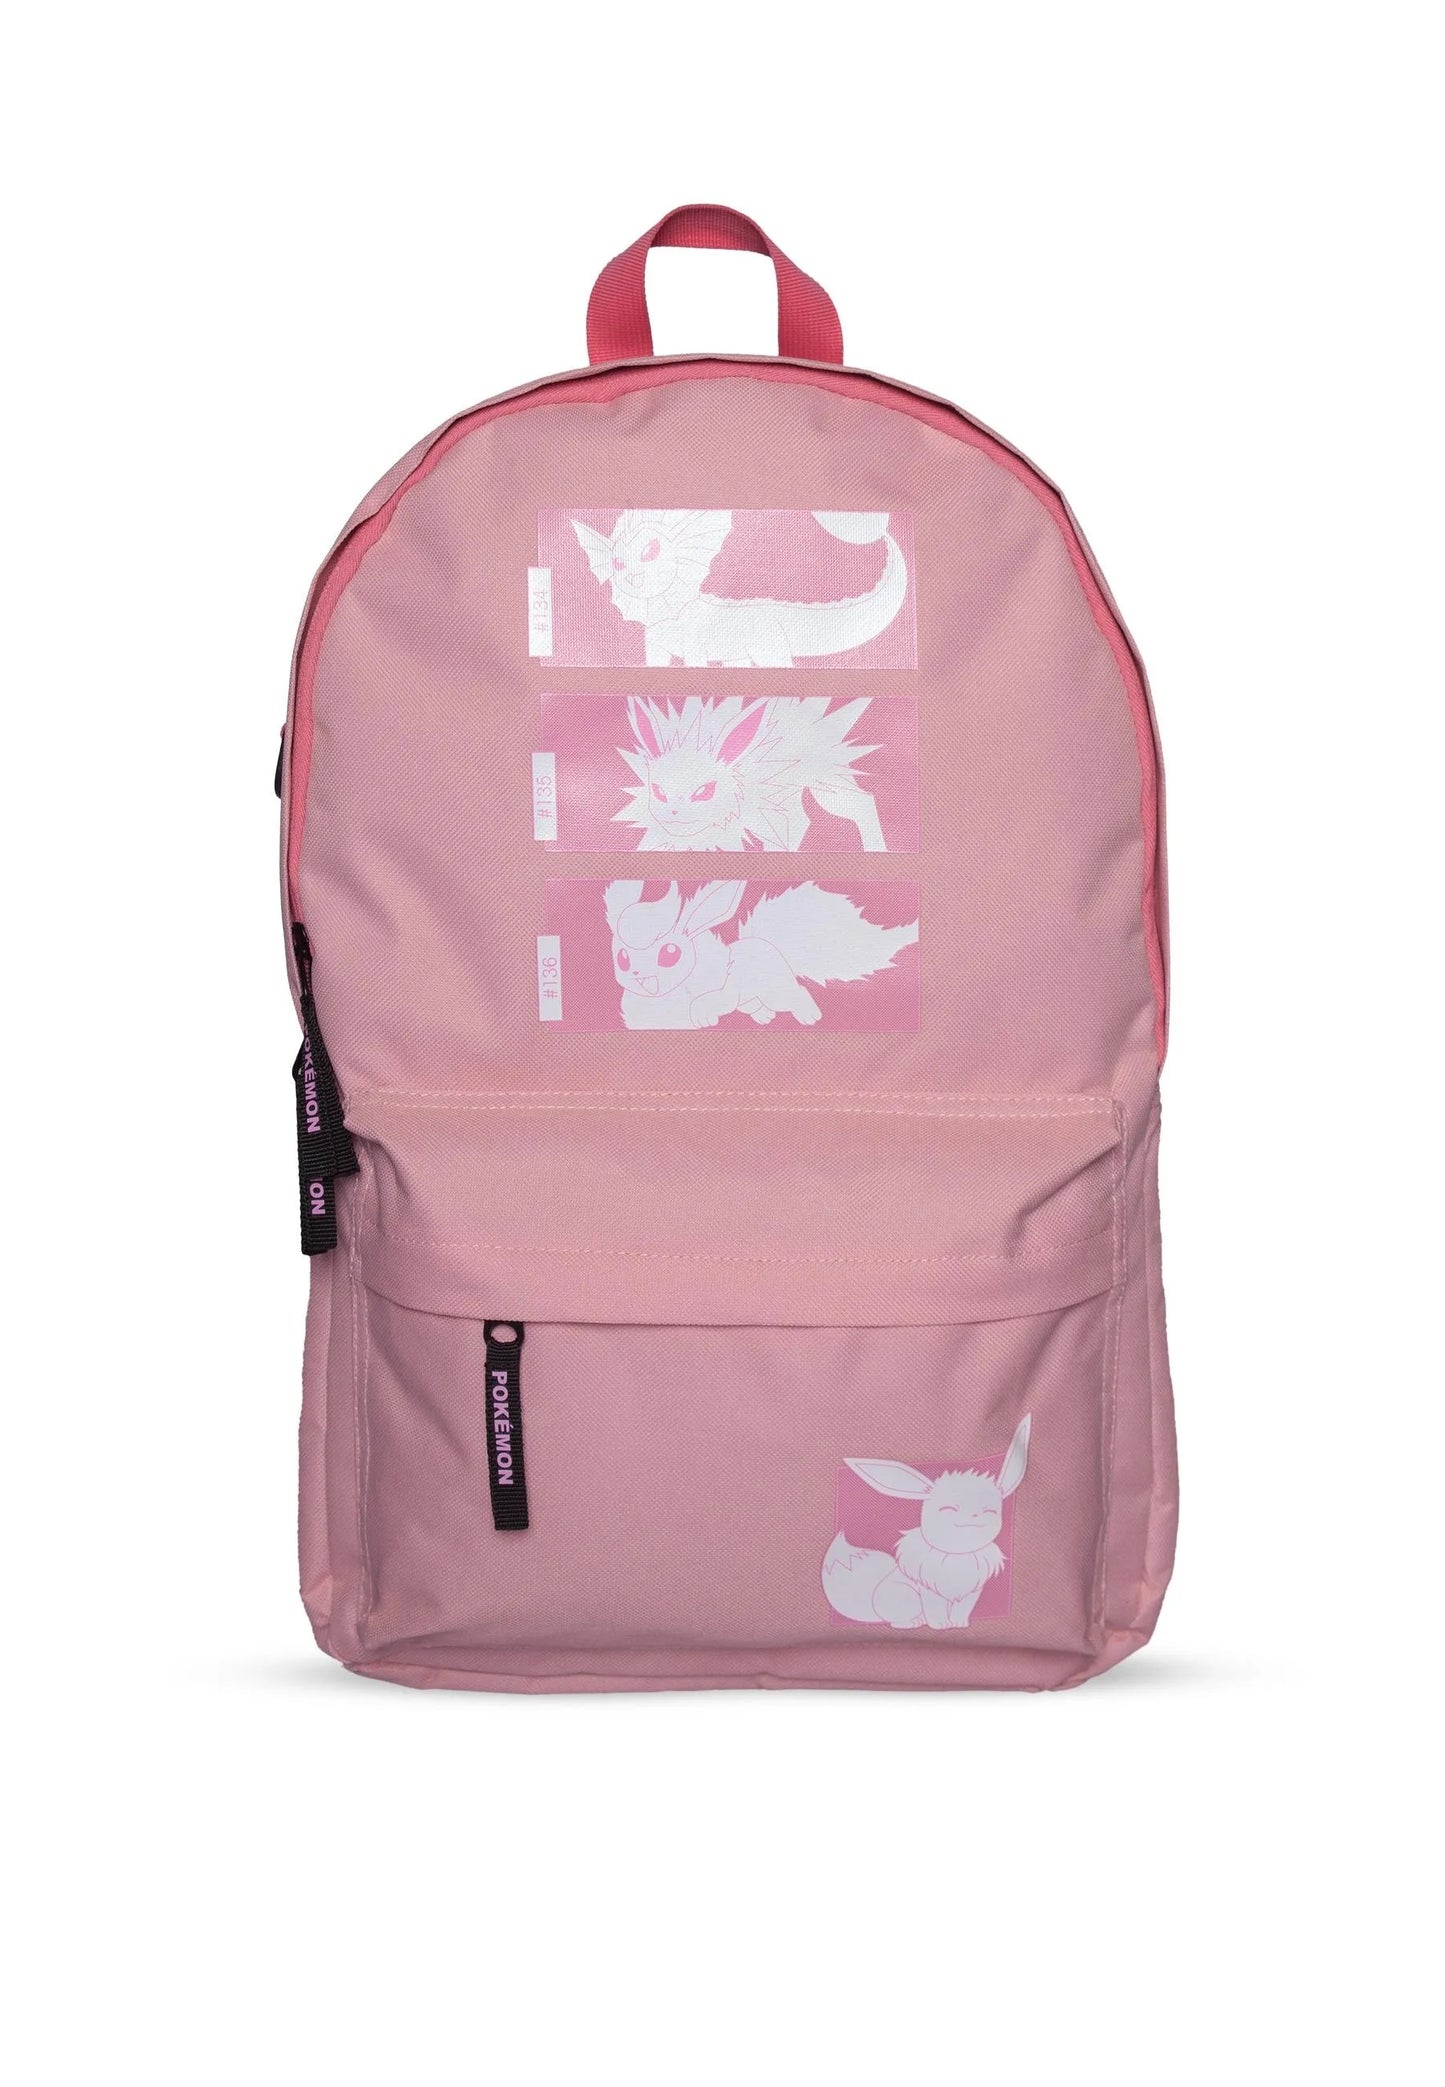 POKEMON - Eevee Pink Backpack